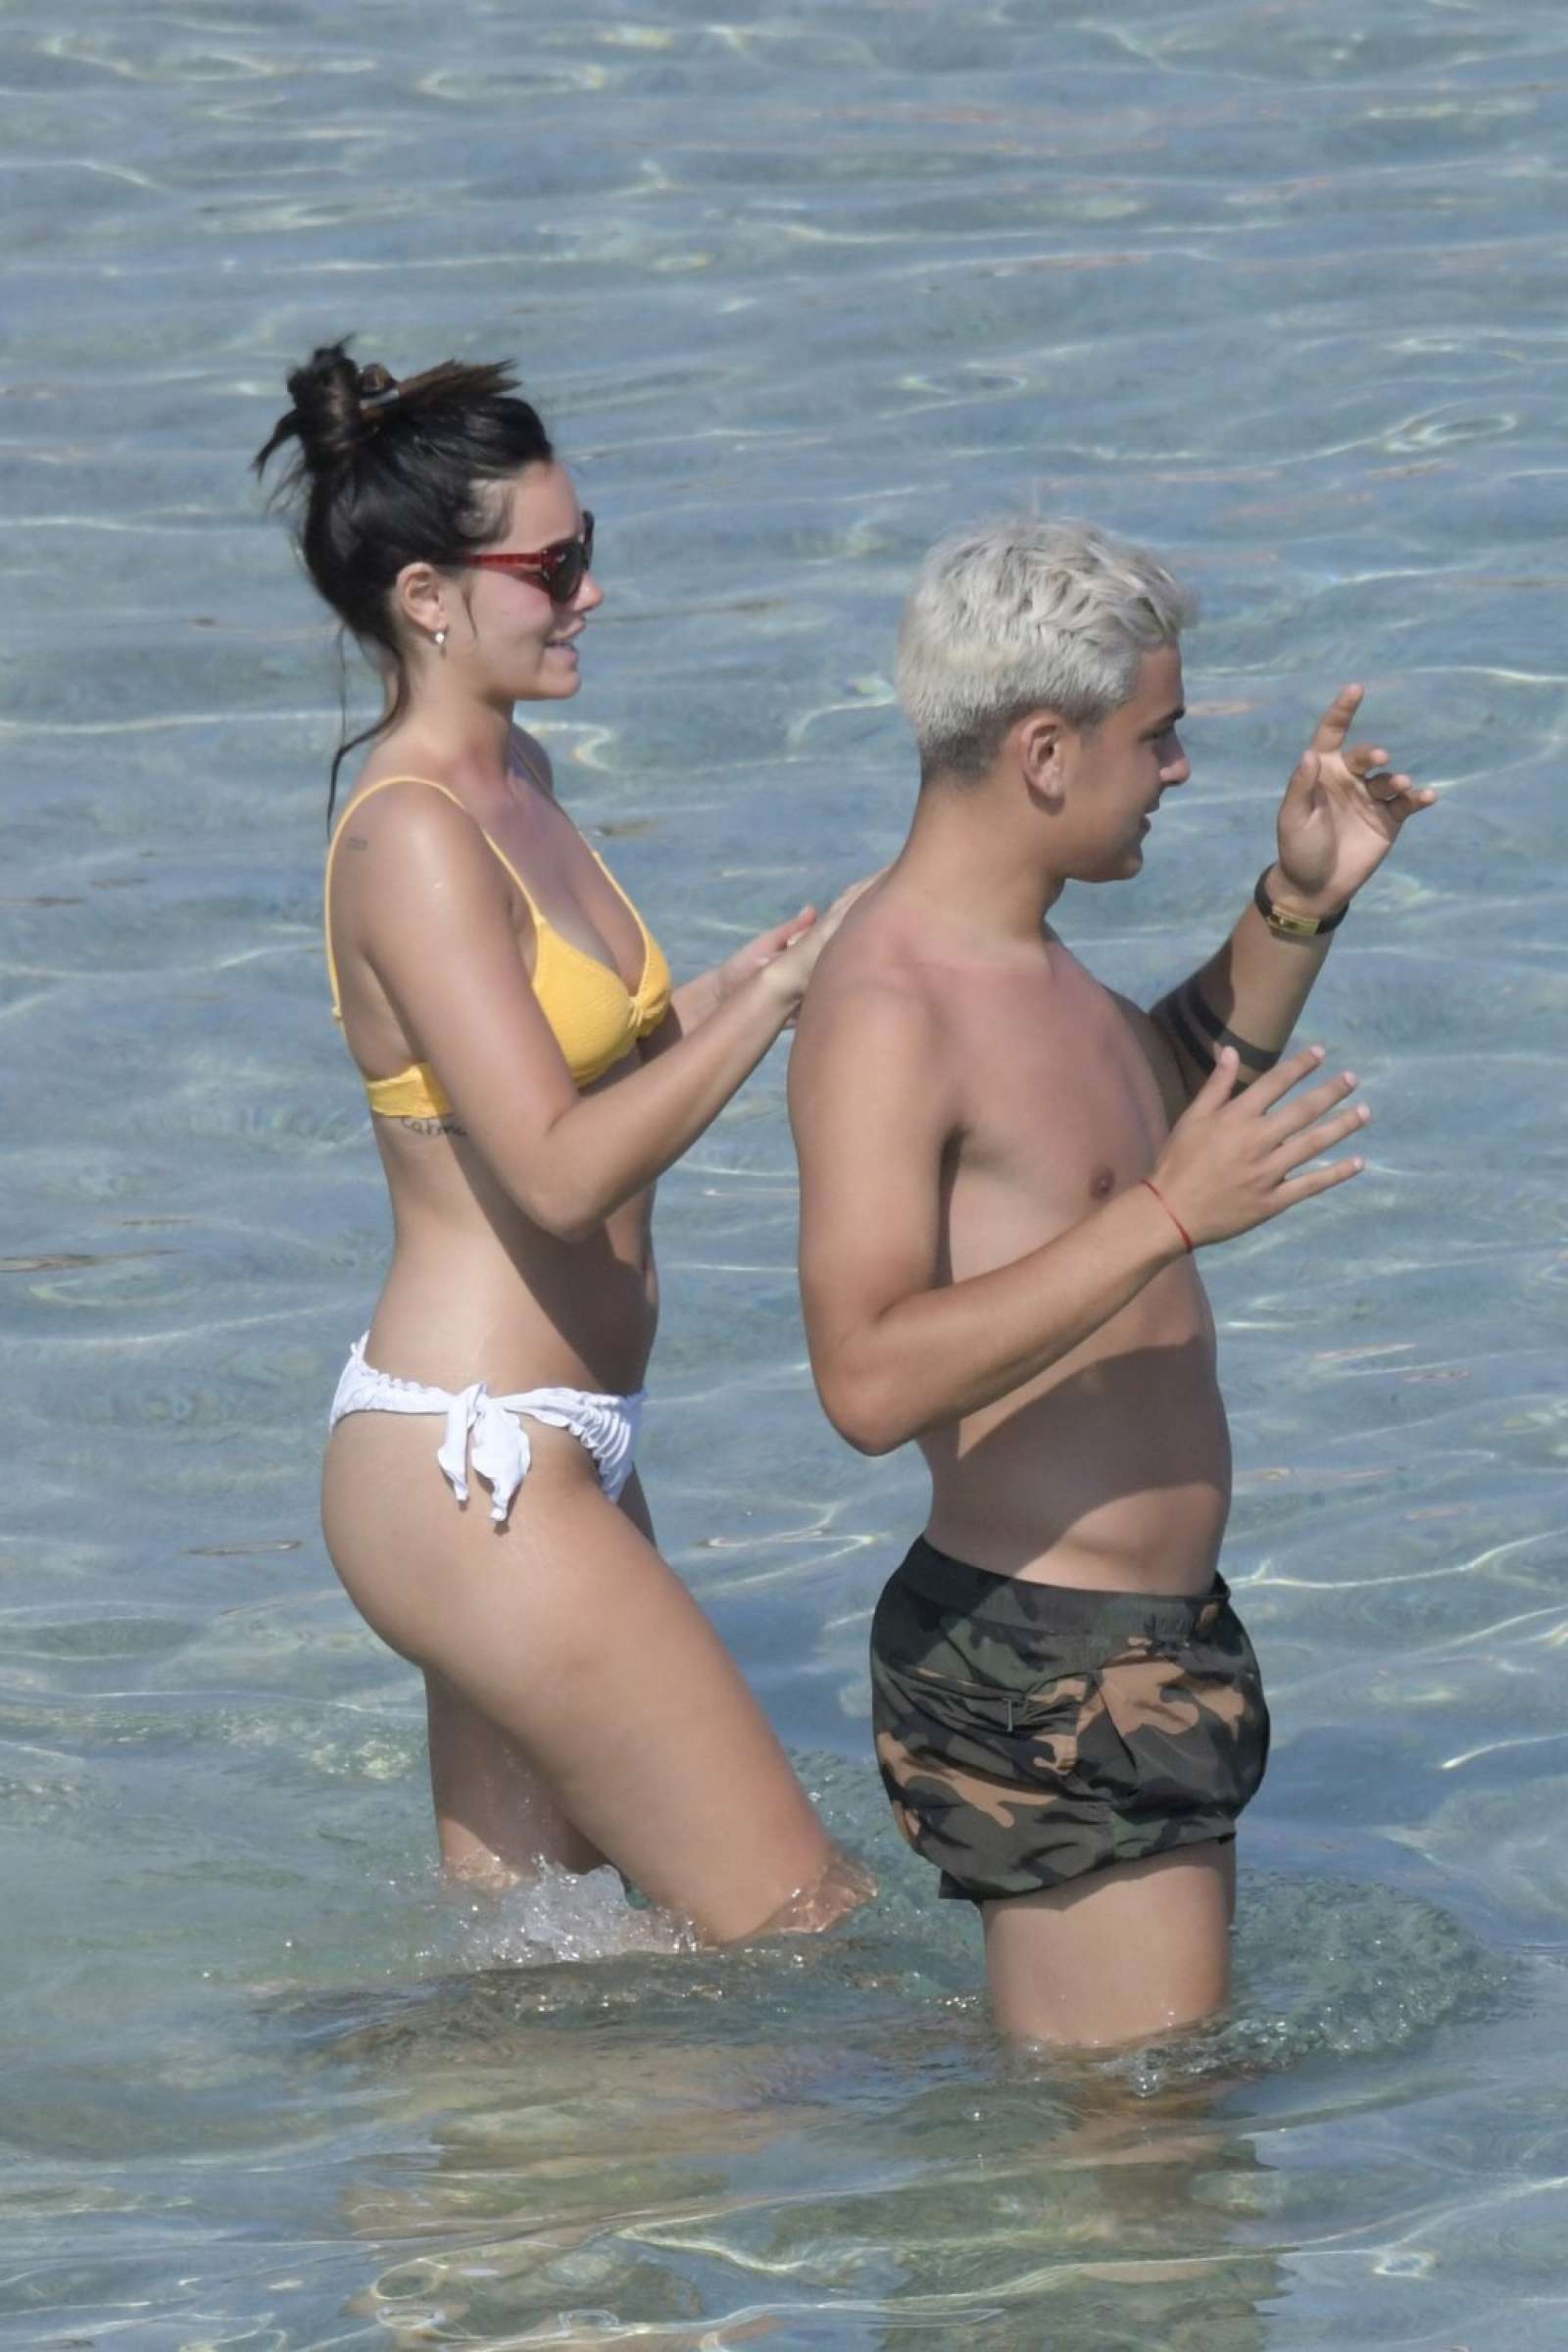 Oriana Sabatini in Bikini at the beach in Mykonos July 28, 2018 18